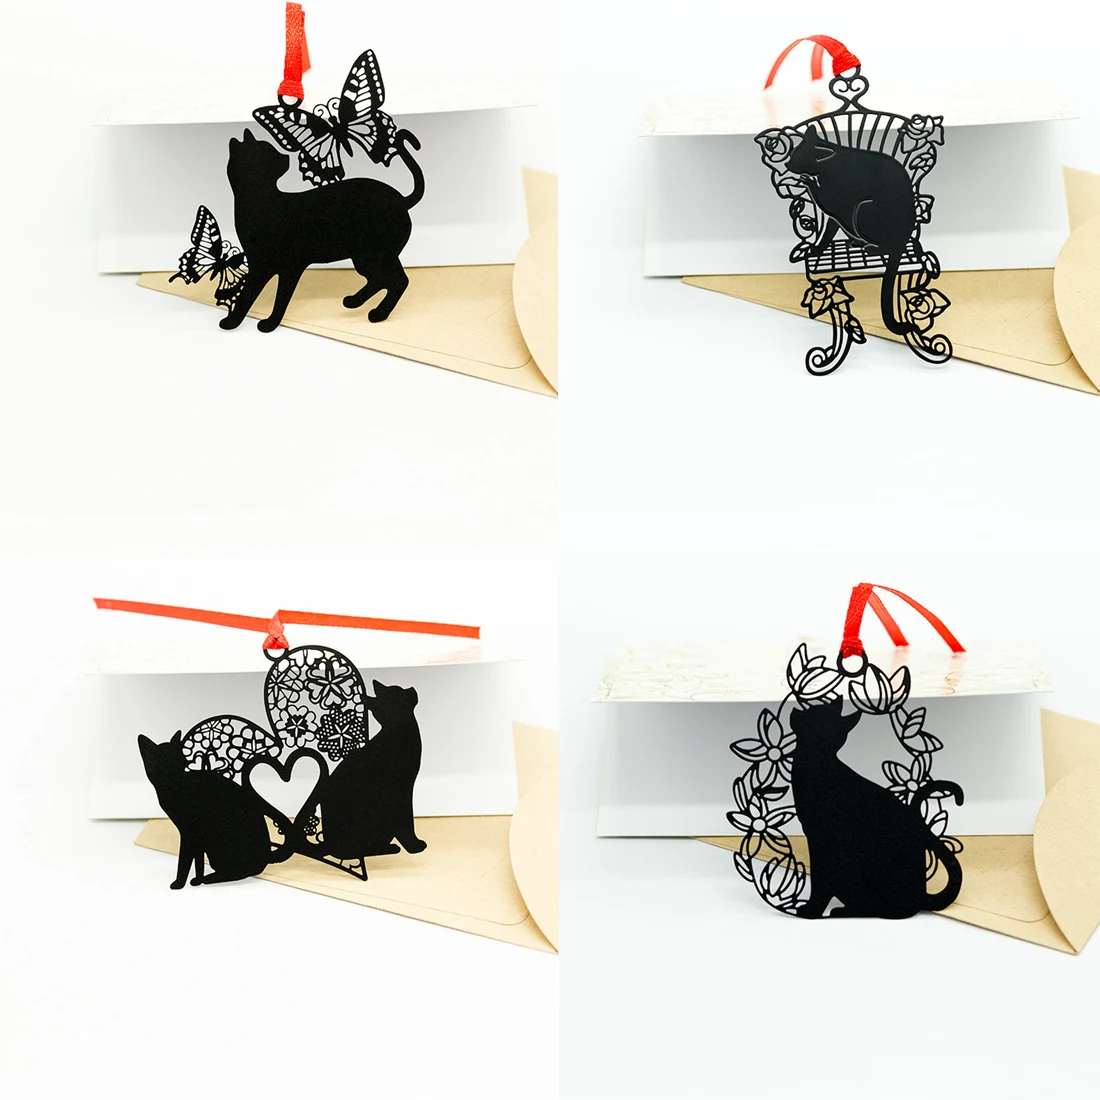 FangNymph серии черная кошка металла Sainless Сталь закладки полые закладки творческий студенческие канцелярские подарки